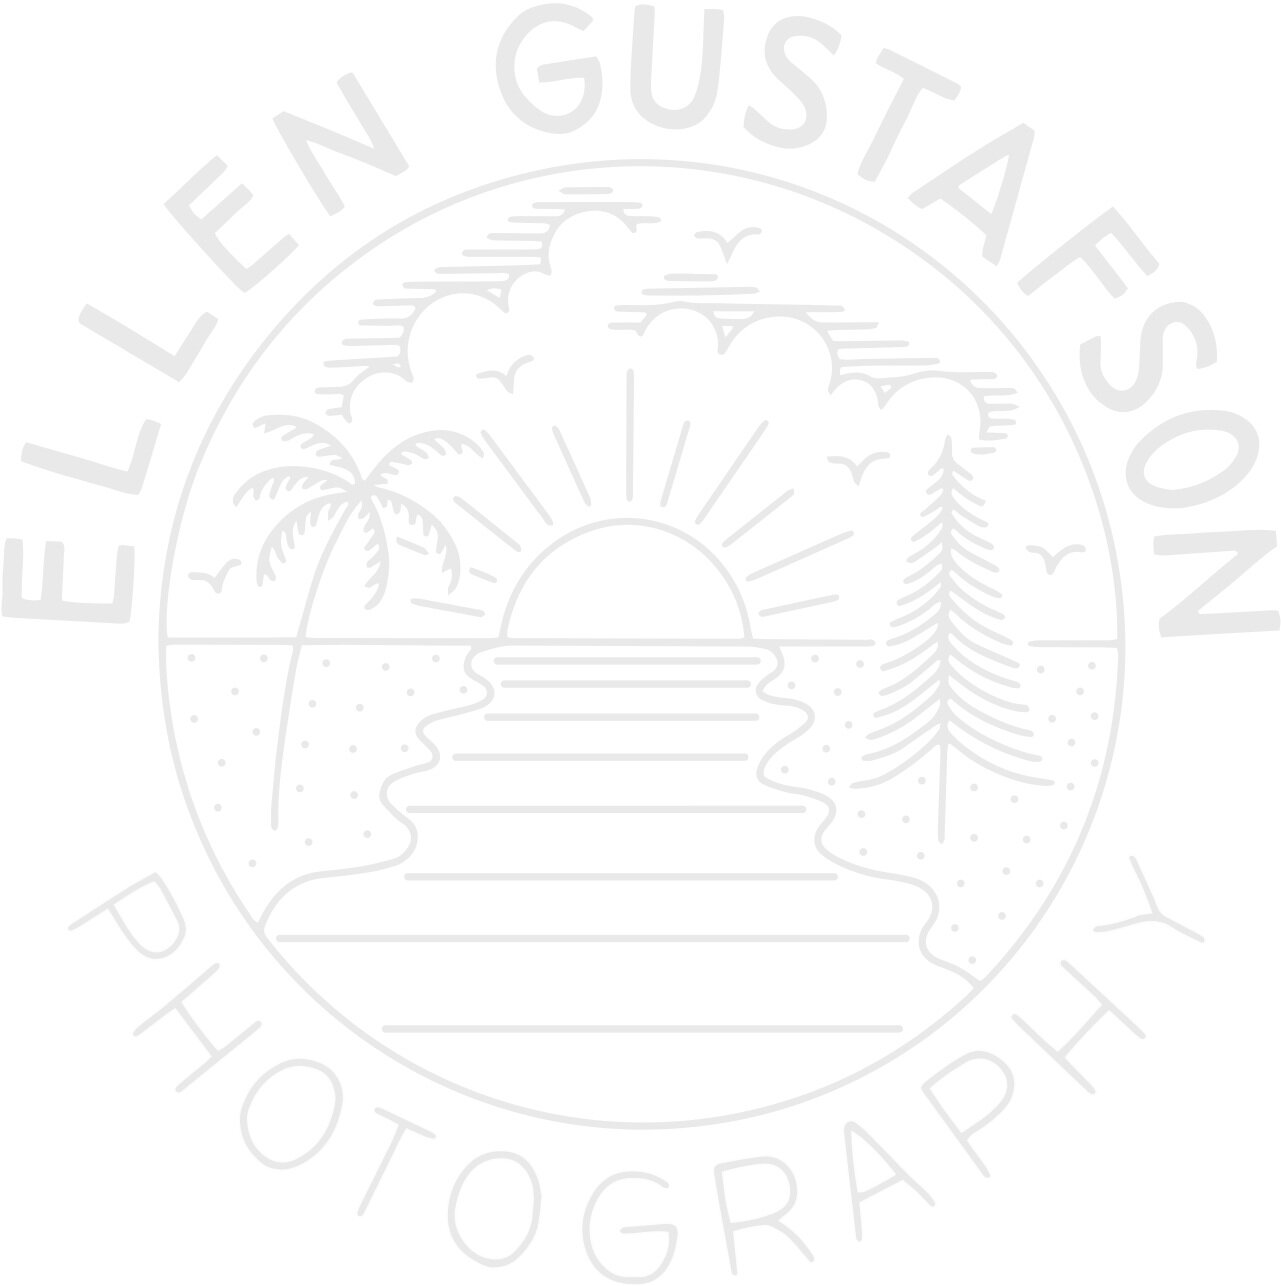 Ellen Gustafson Photography